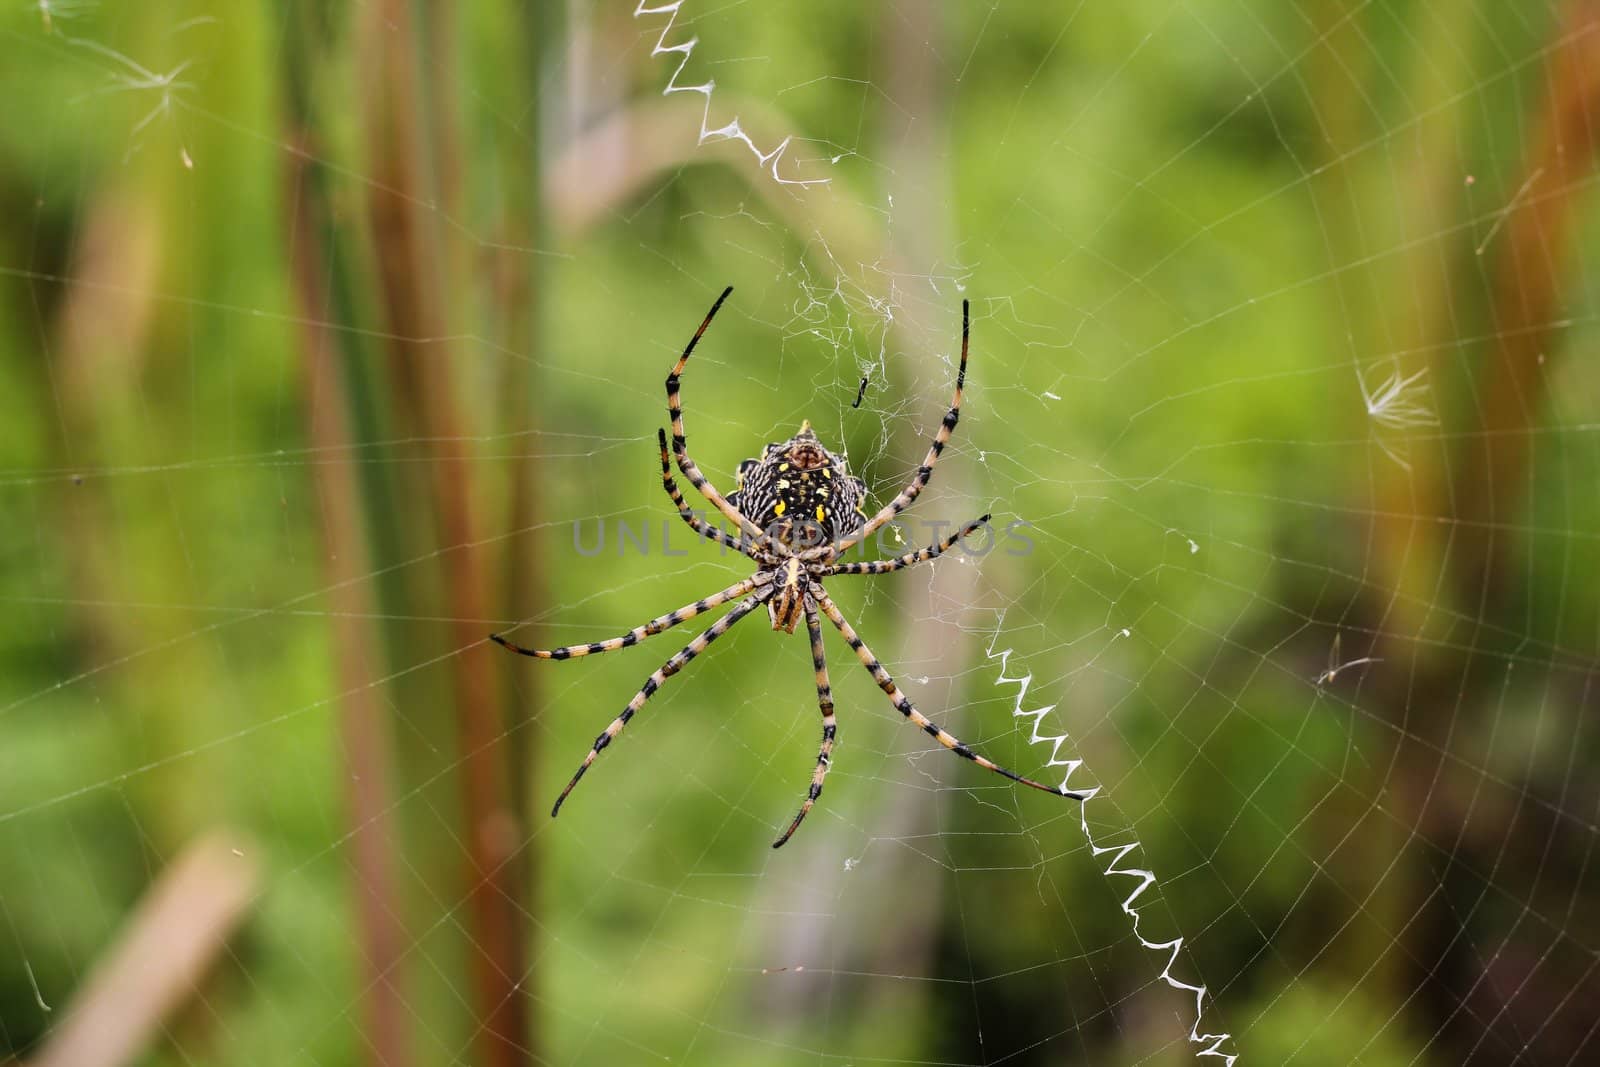 Spider on a spiderweb by dwaschnig_photo